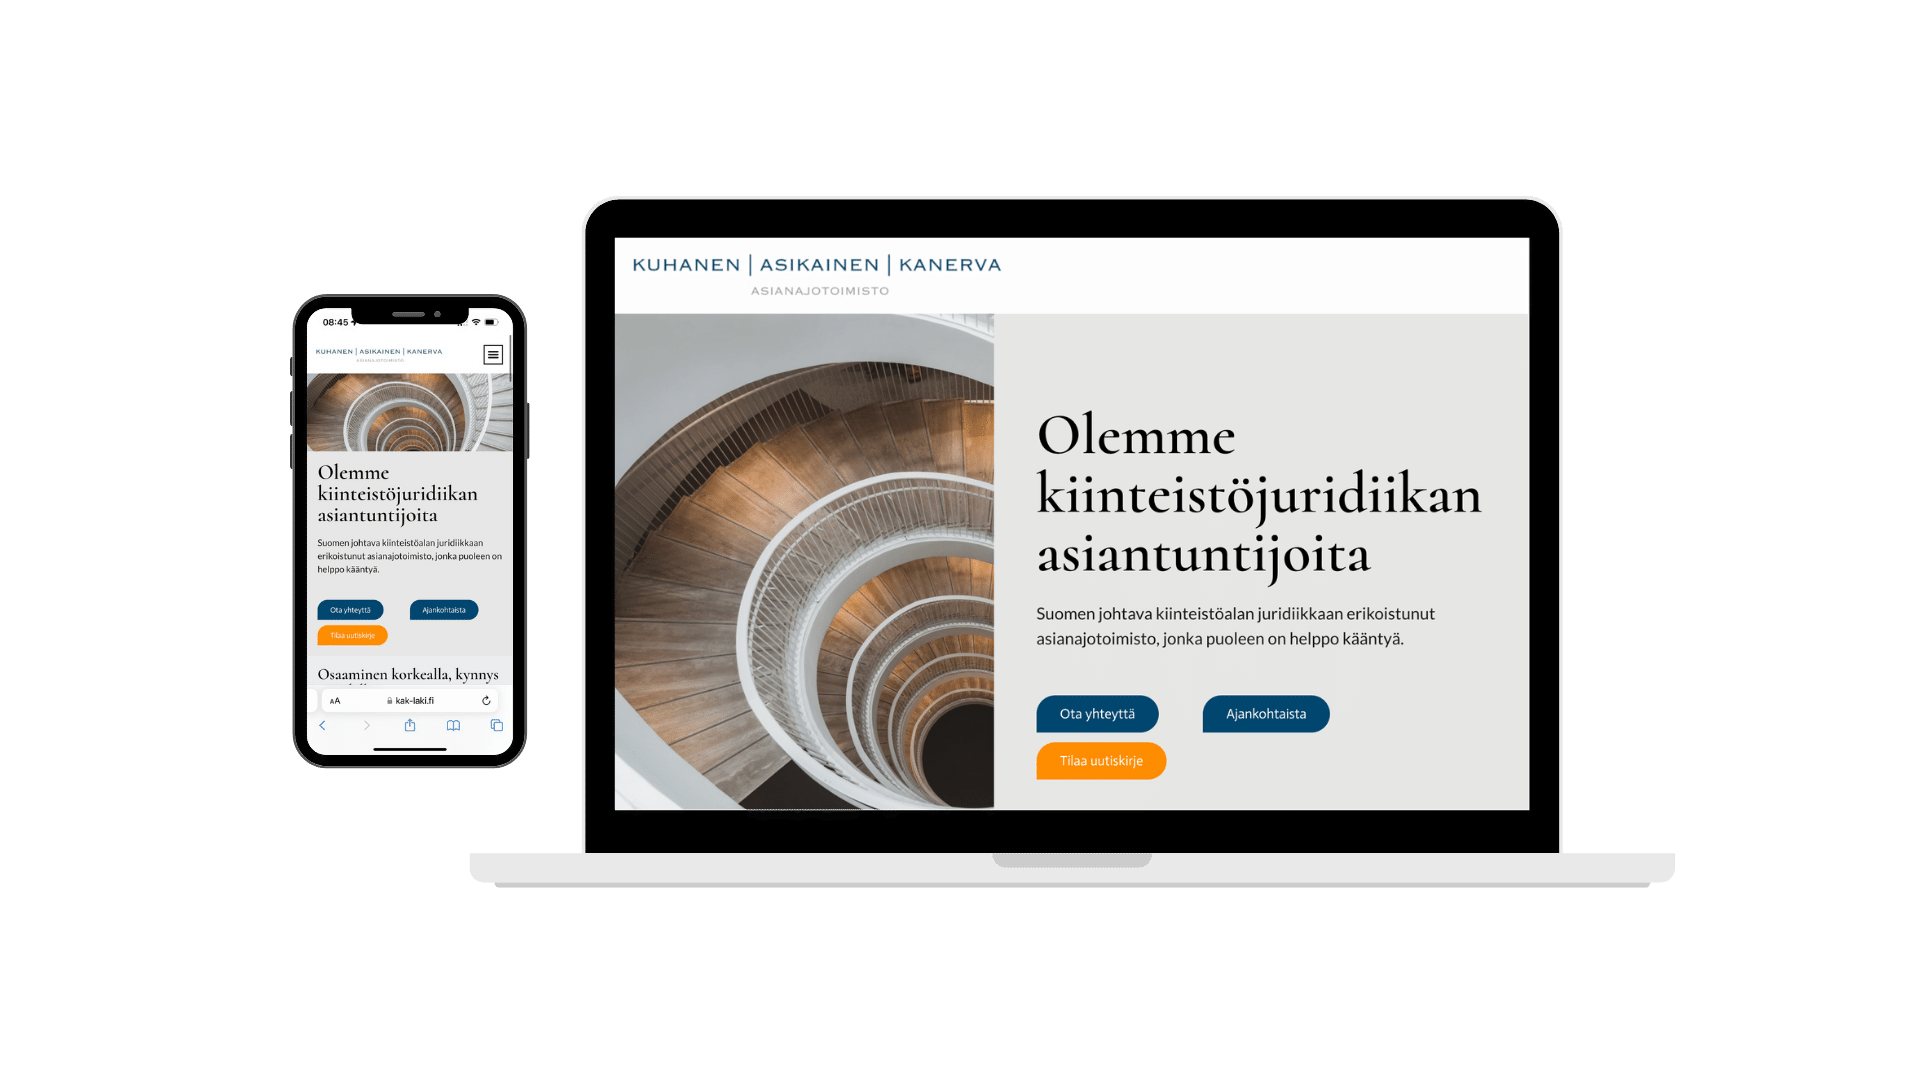 Asianajotoimisto Kuhanen, Asikainen & Kanerva Oy:n verkkosivut, joita Folcan on kehittänyt